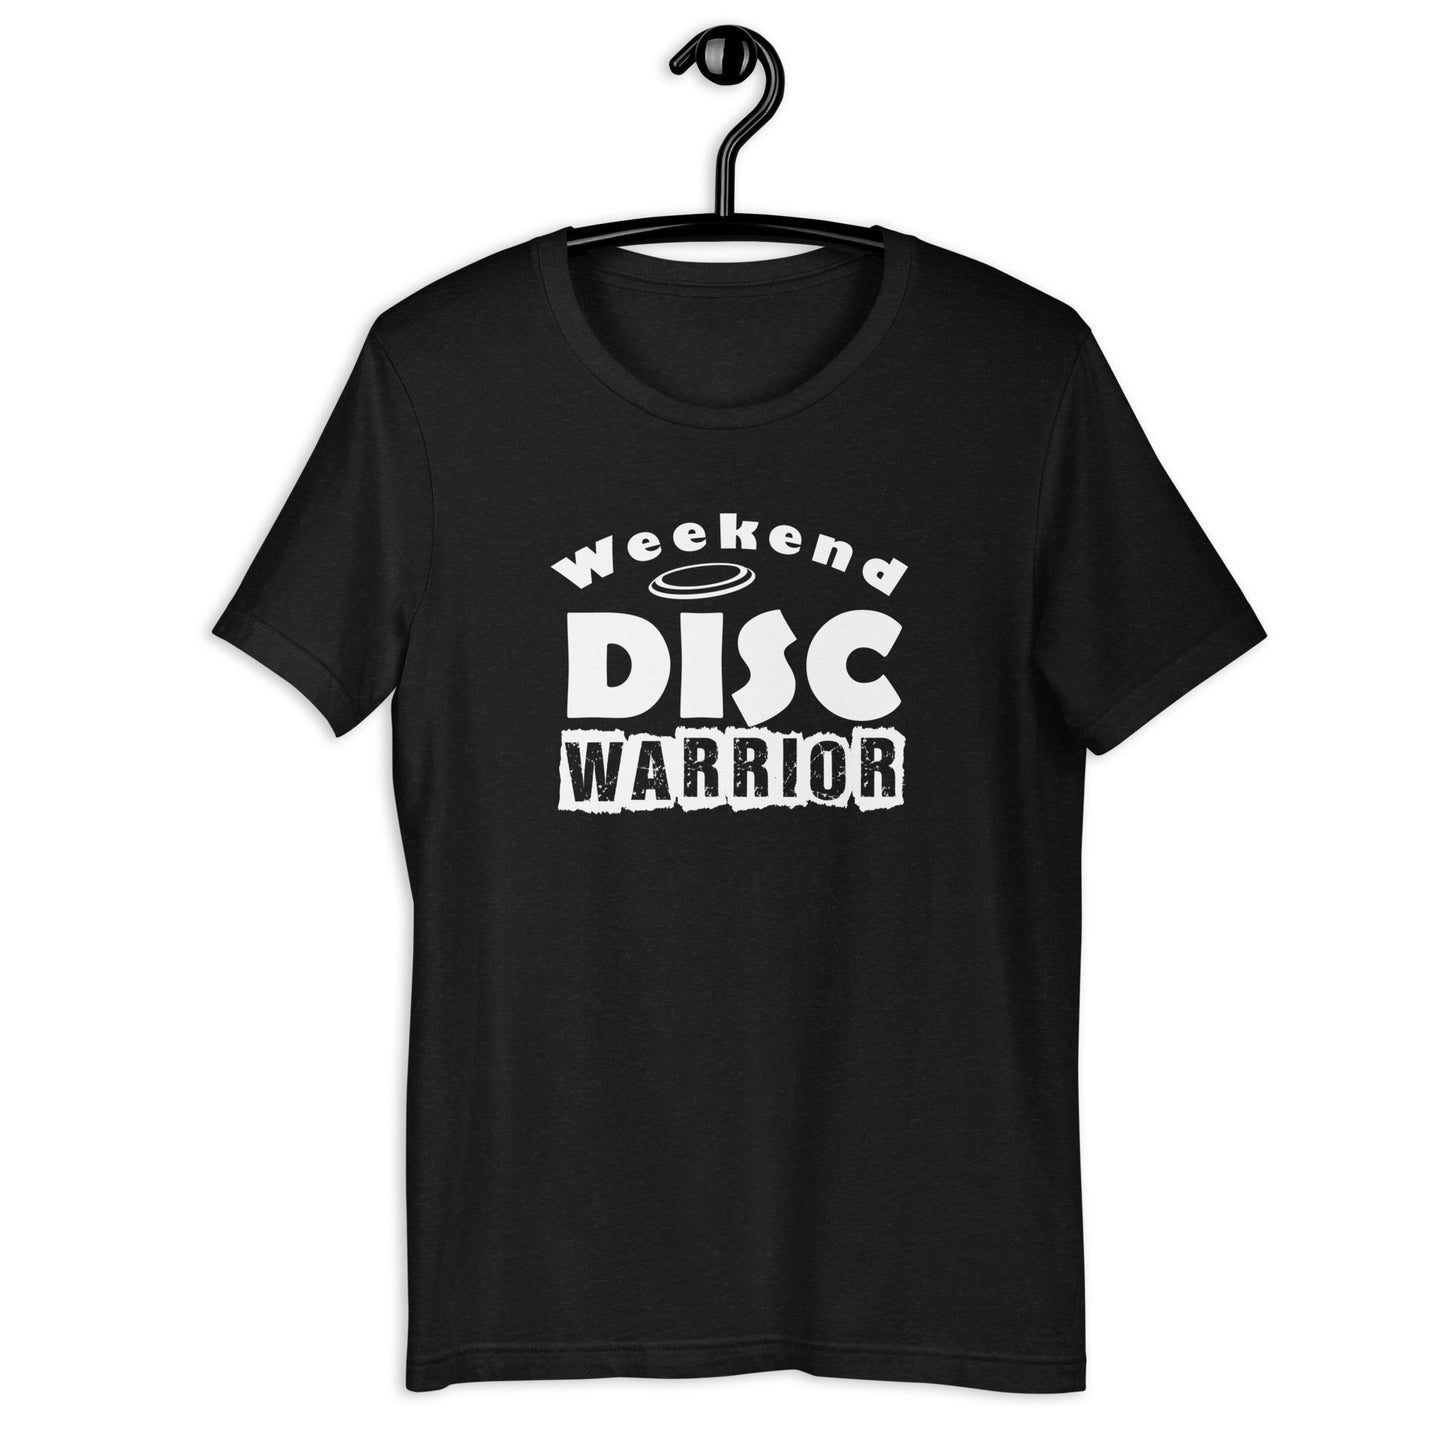 WEEKEND DISC WARRIOR - Unisex t-shirt